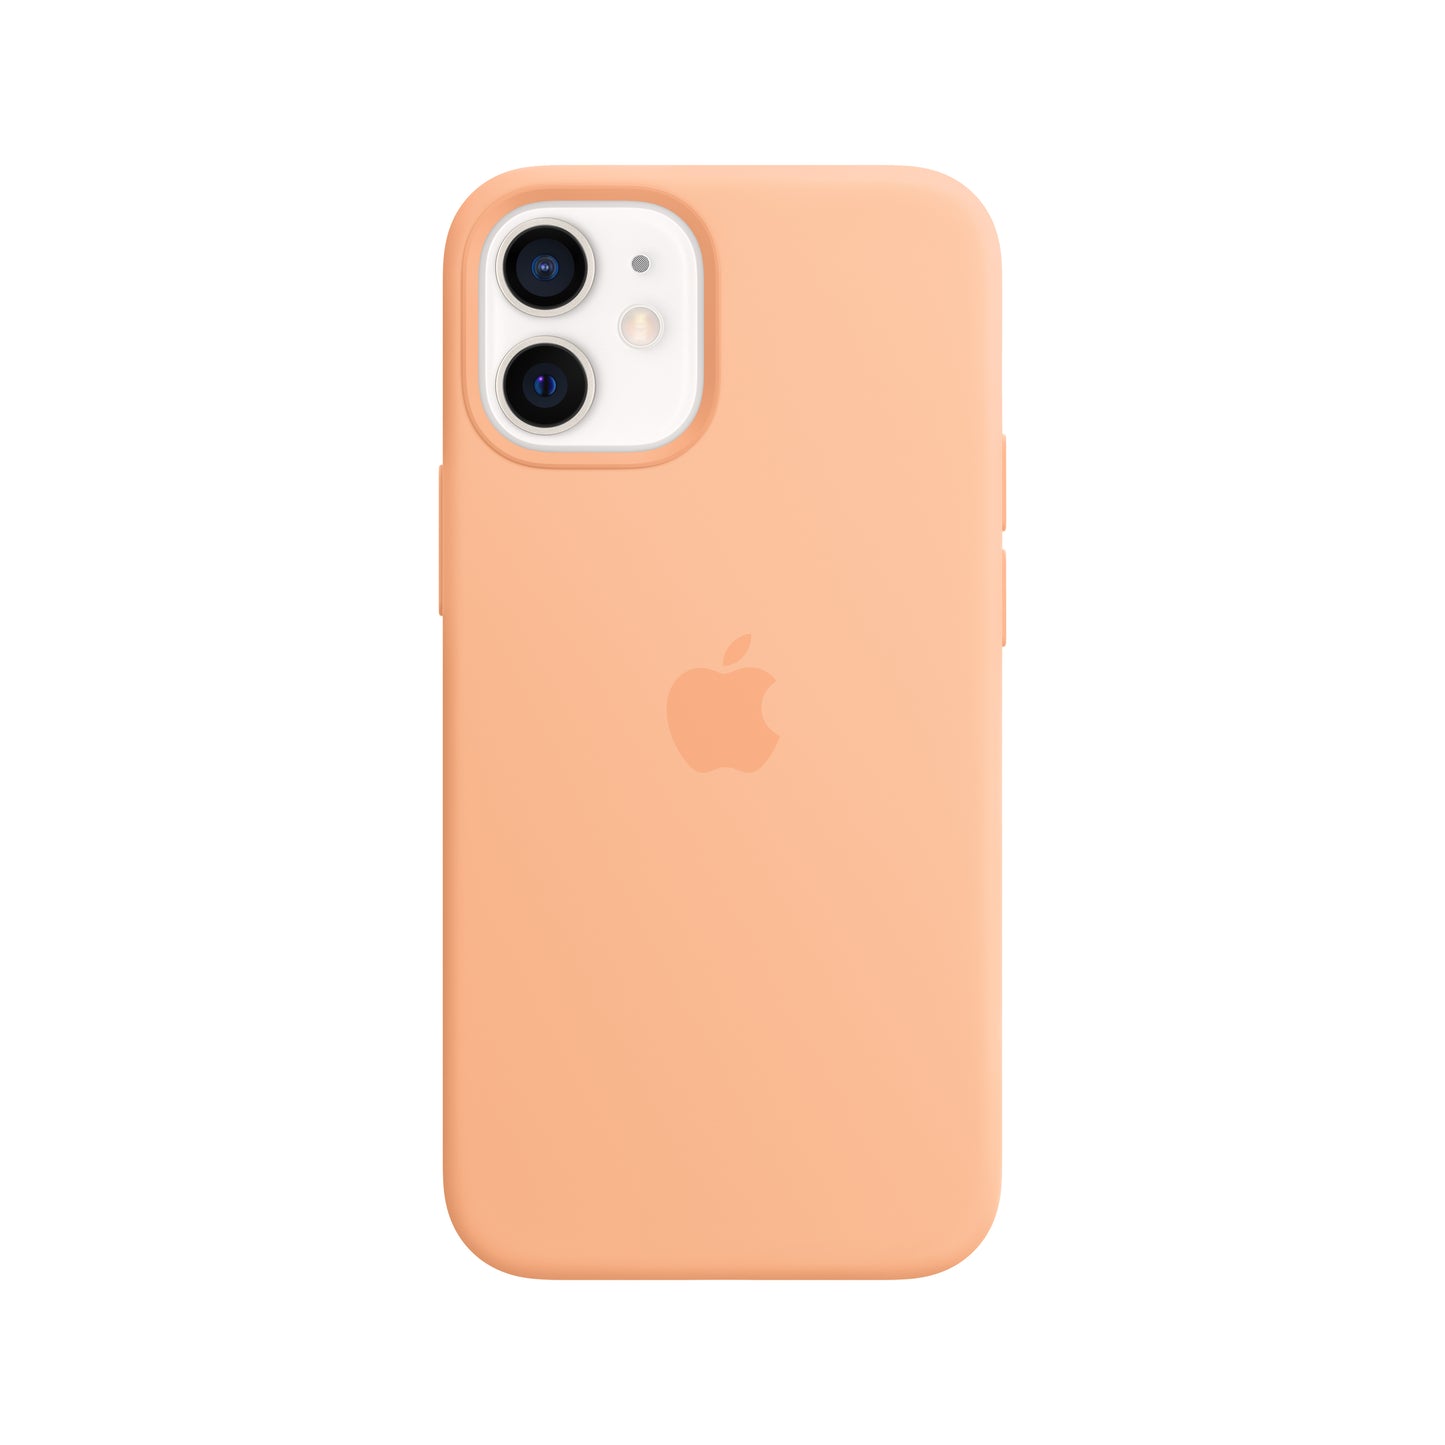 Apple iPhone 12 mini Silikon Case mit MagSafe, cantaloupe